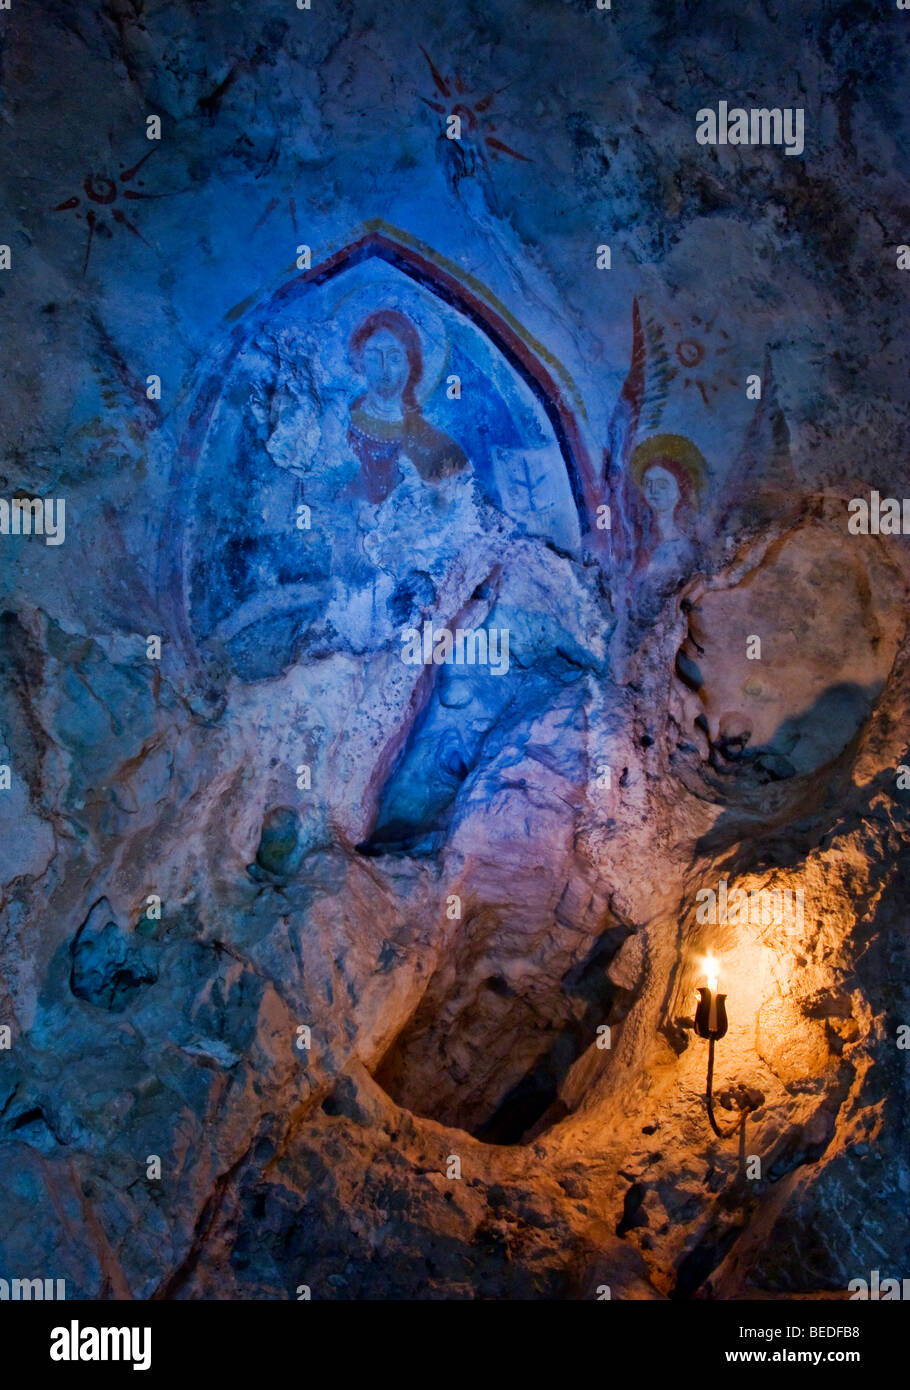 Immagine sacra nella grotta. Foto Stock